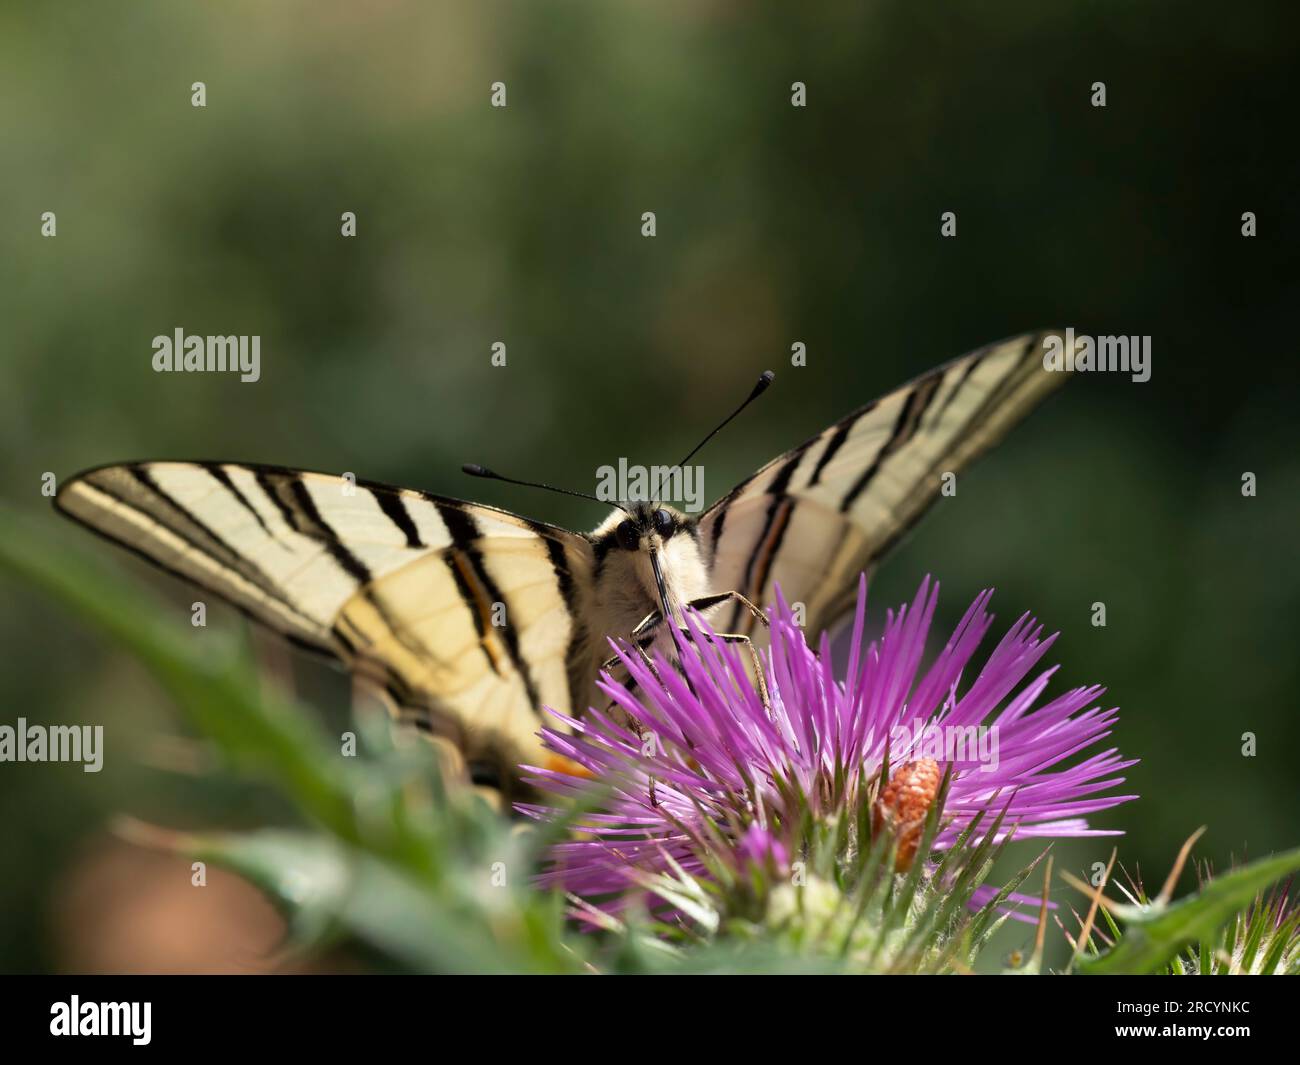 Schwalbenschwanz-Schmetterling (Iphiclides podalirius) auf Milchdistel (Carduus marianus), in der Nähe von Phaestos, Kreta, Griechenland Stockfoto